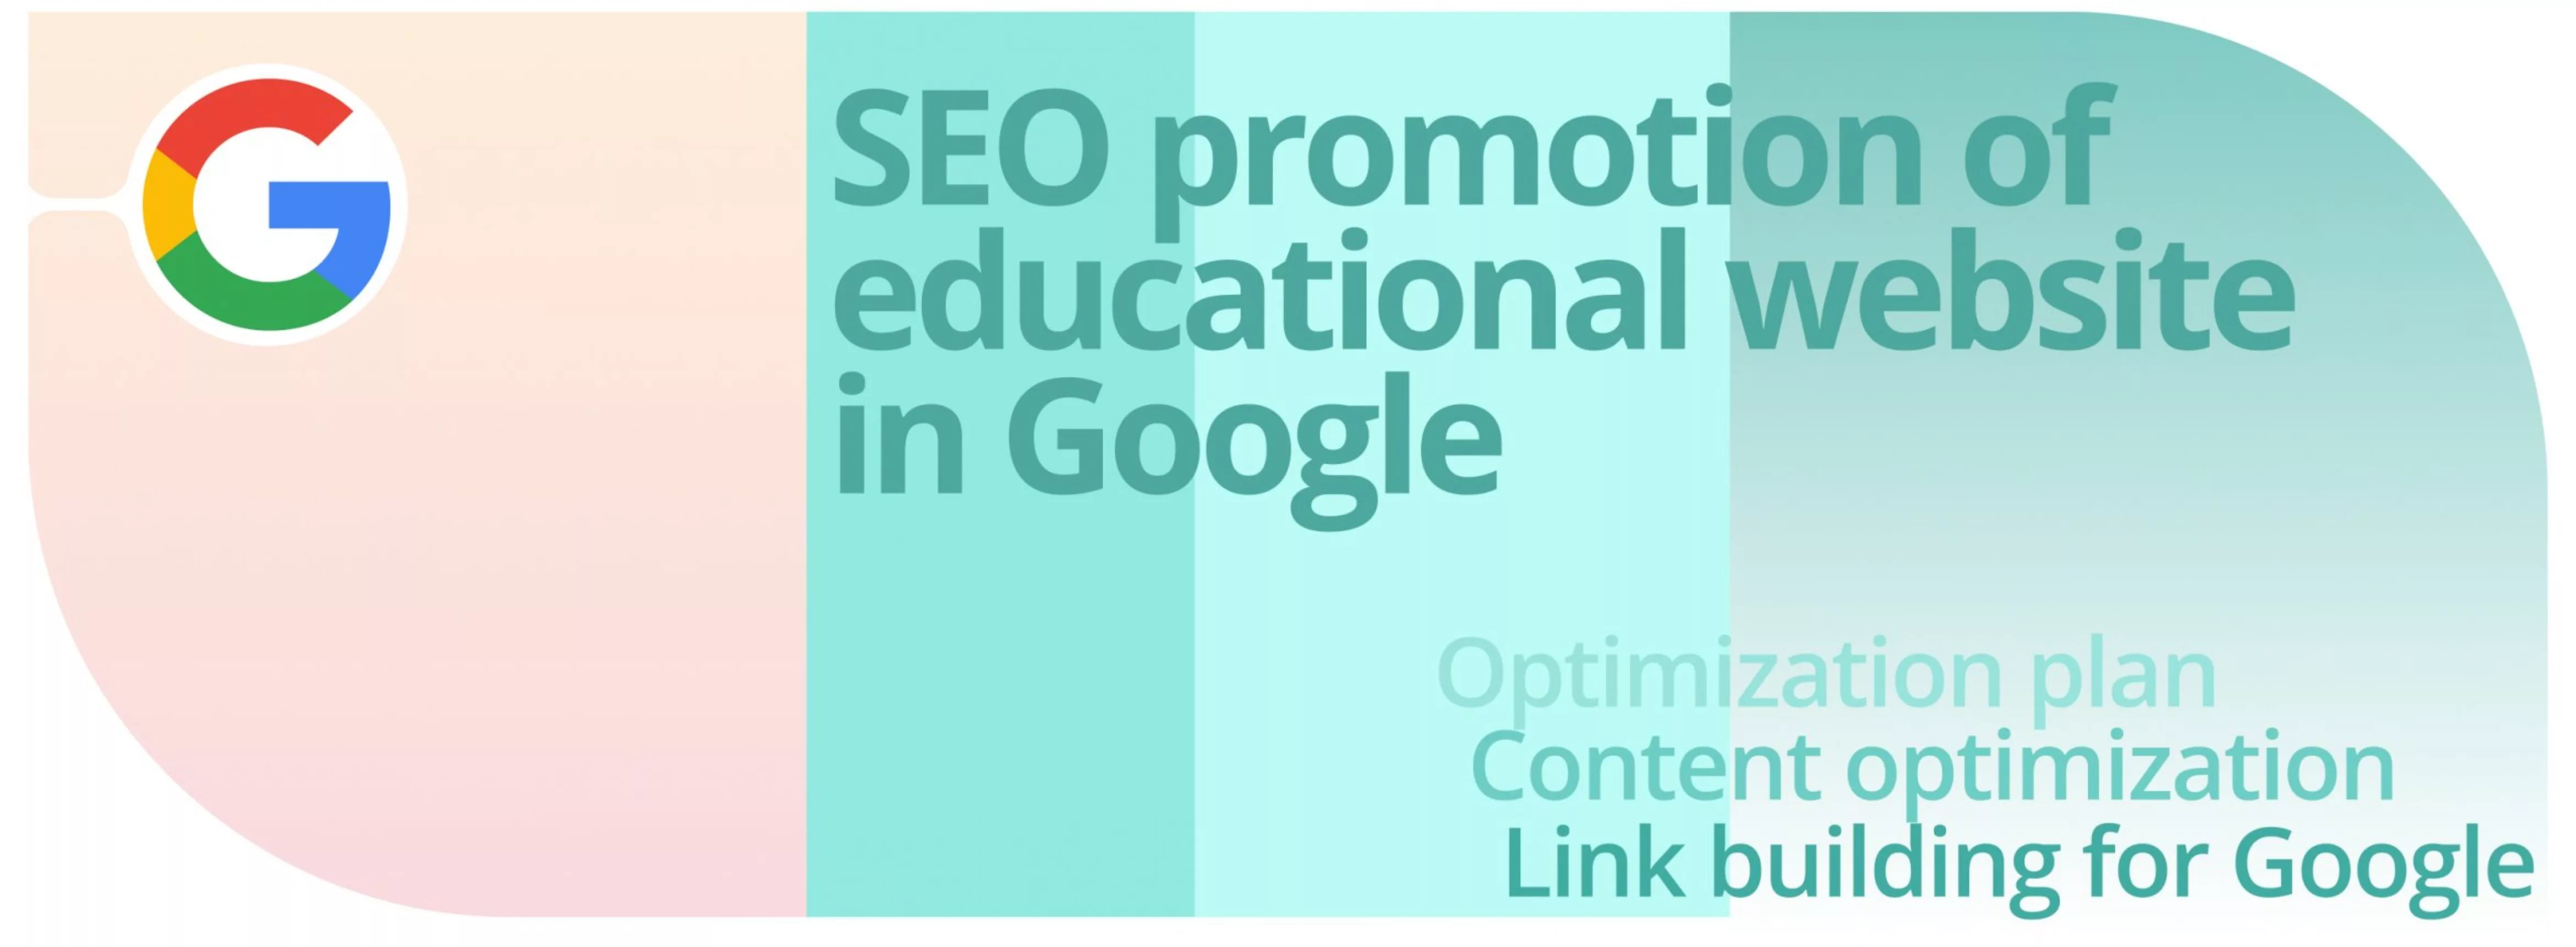 Caso: Promoción SEO de un sitio web educativo en Google.